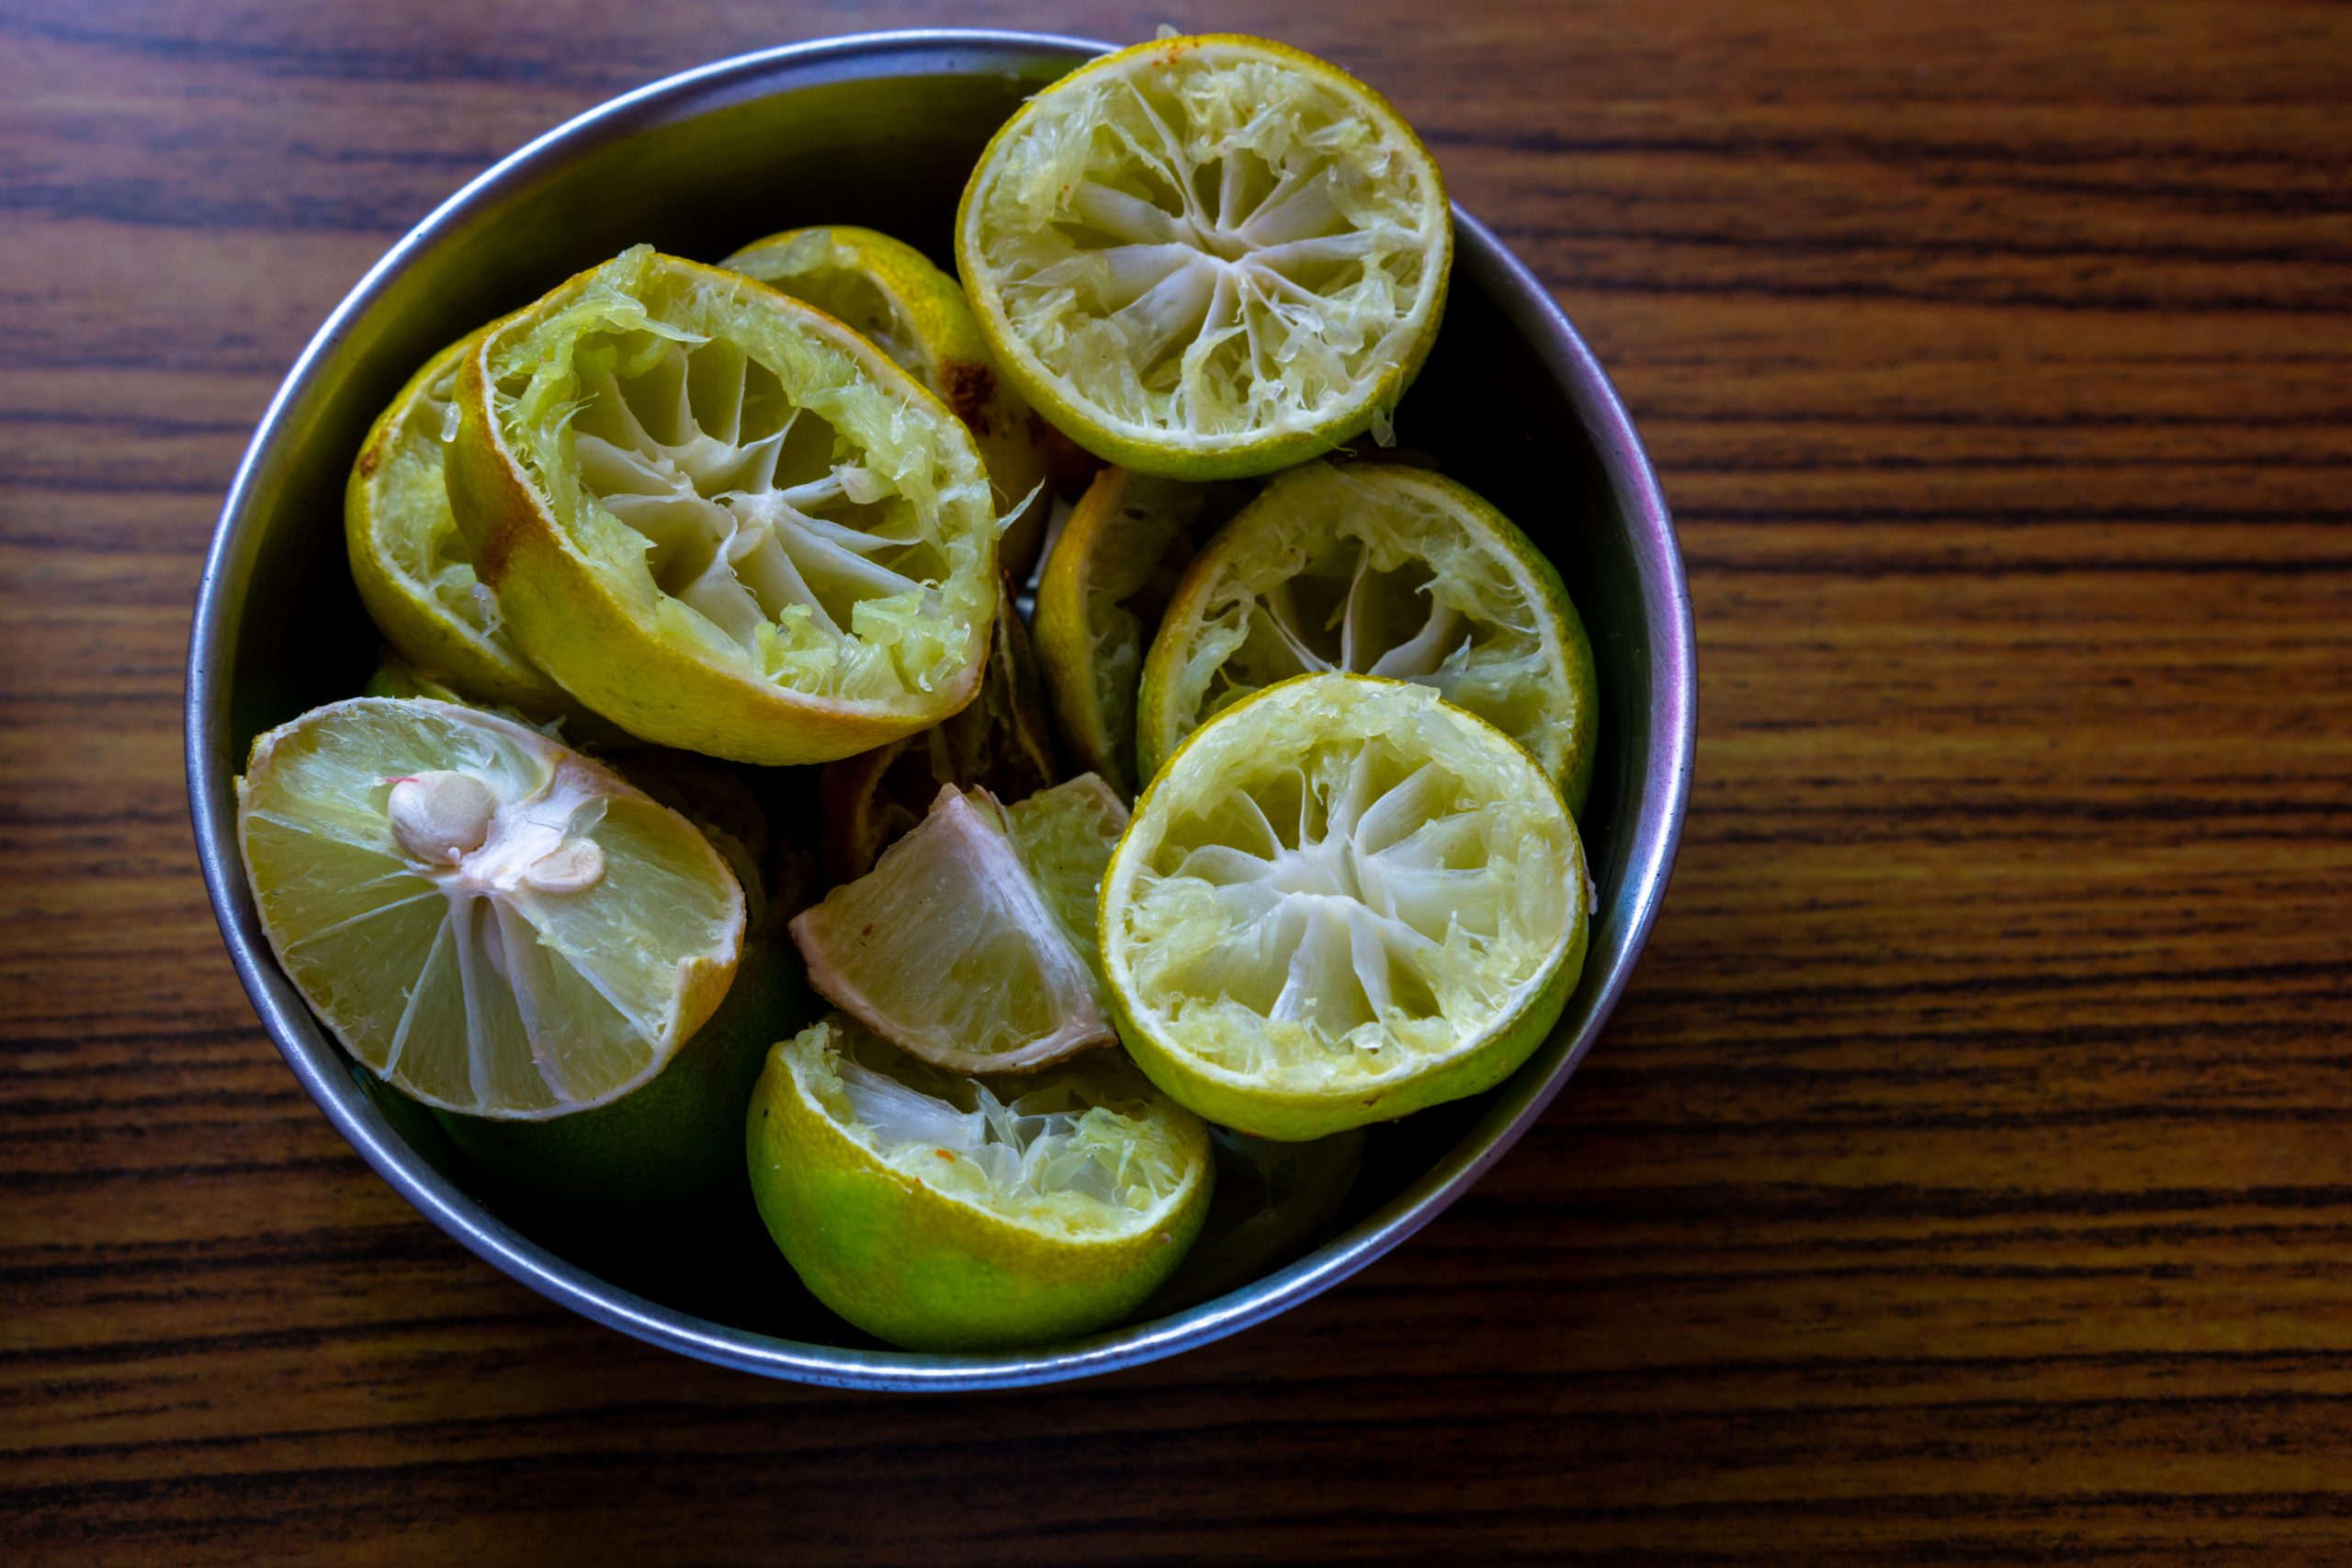 lemons in a bowl